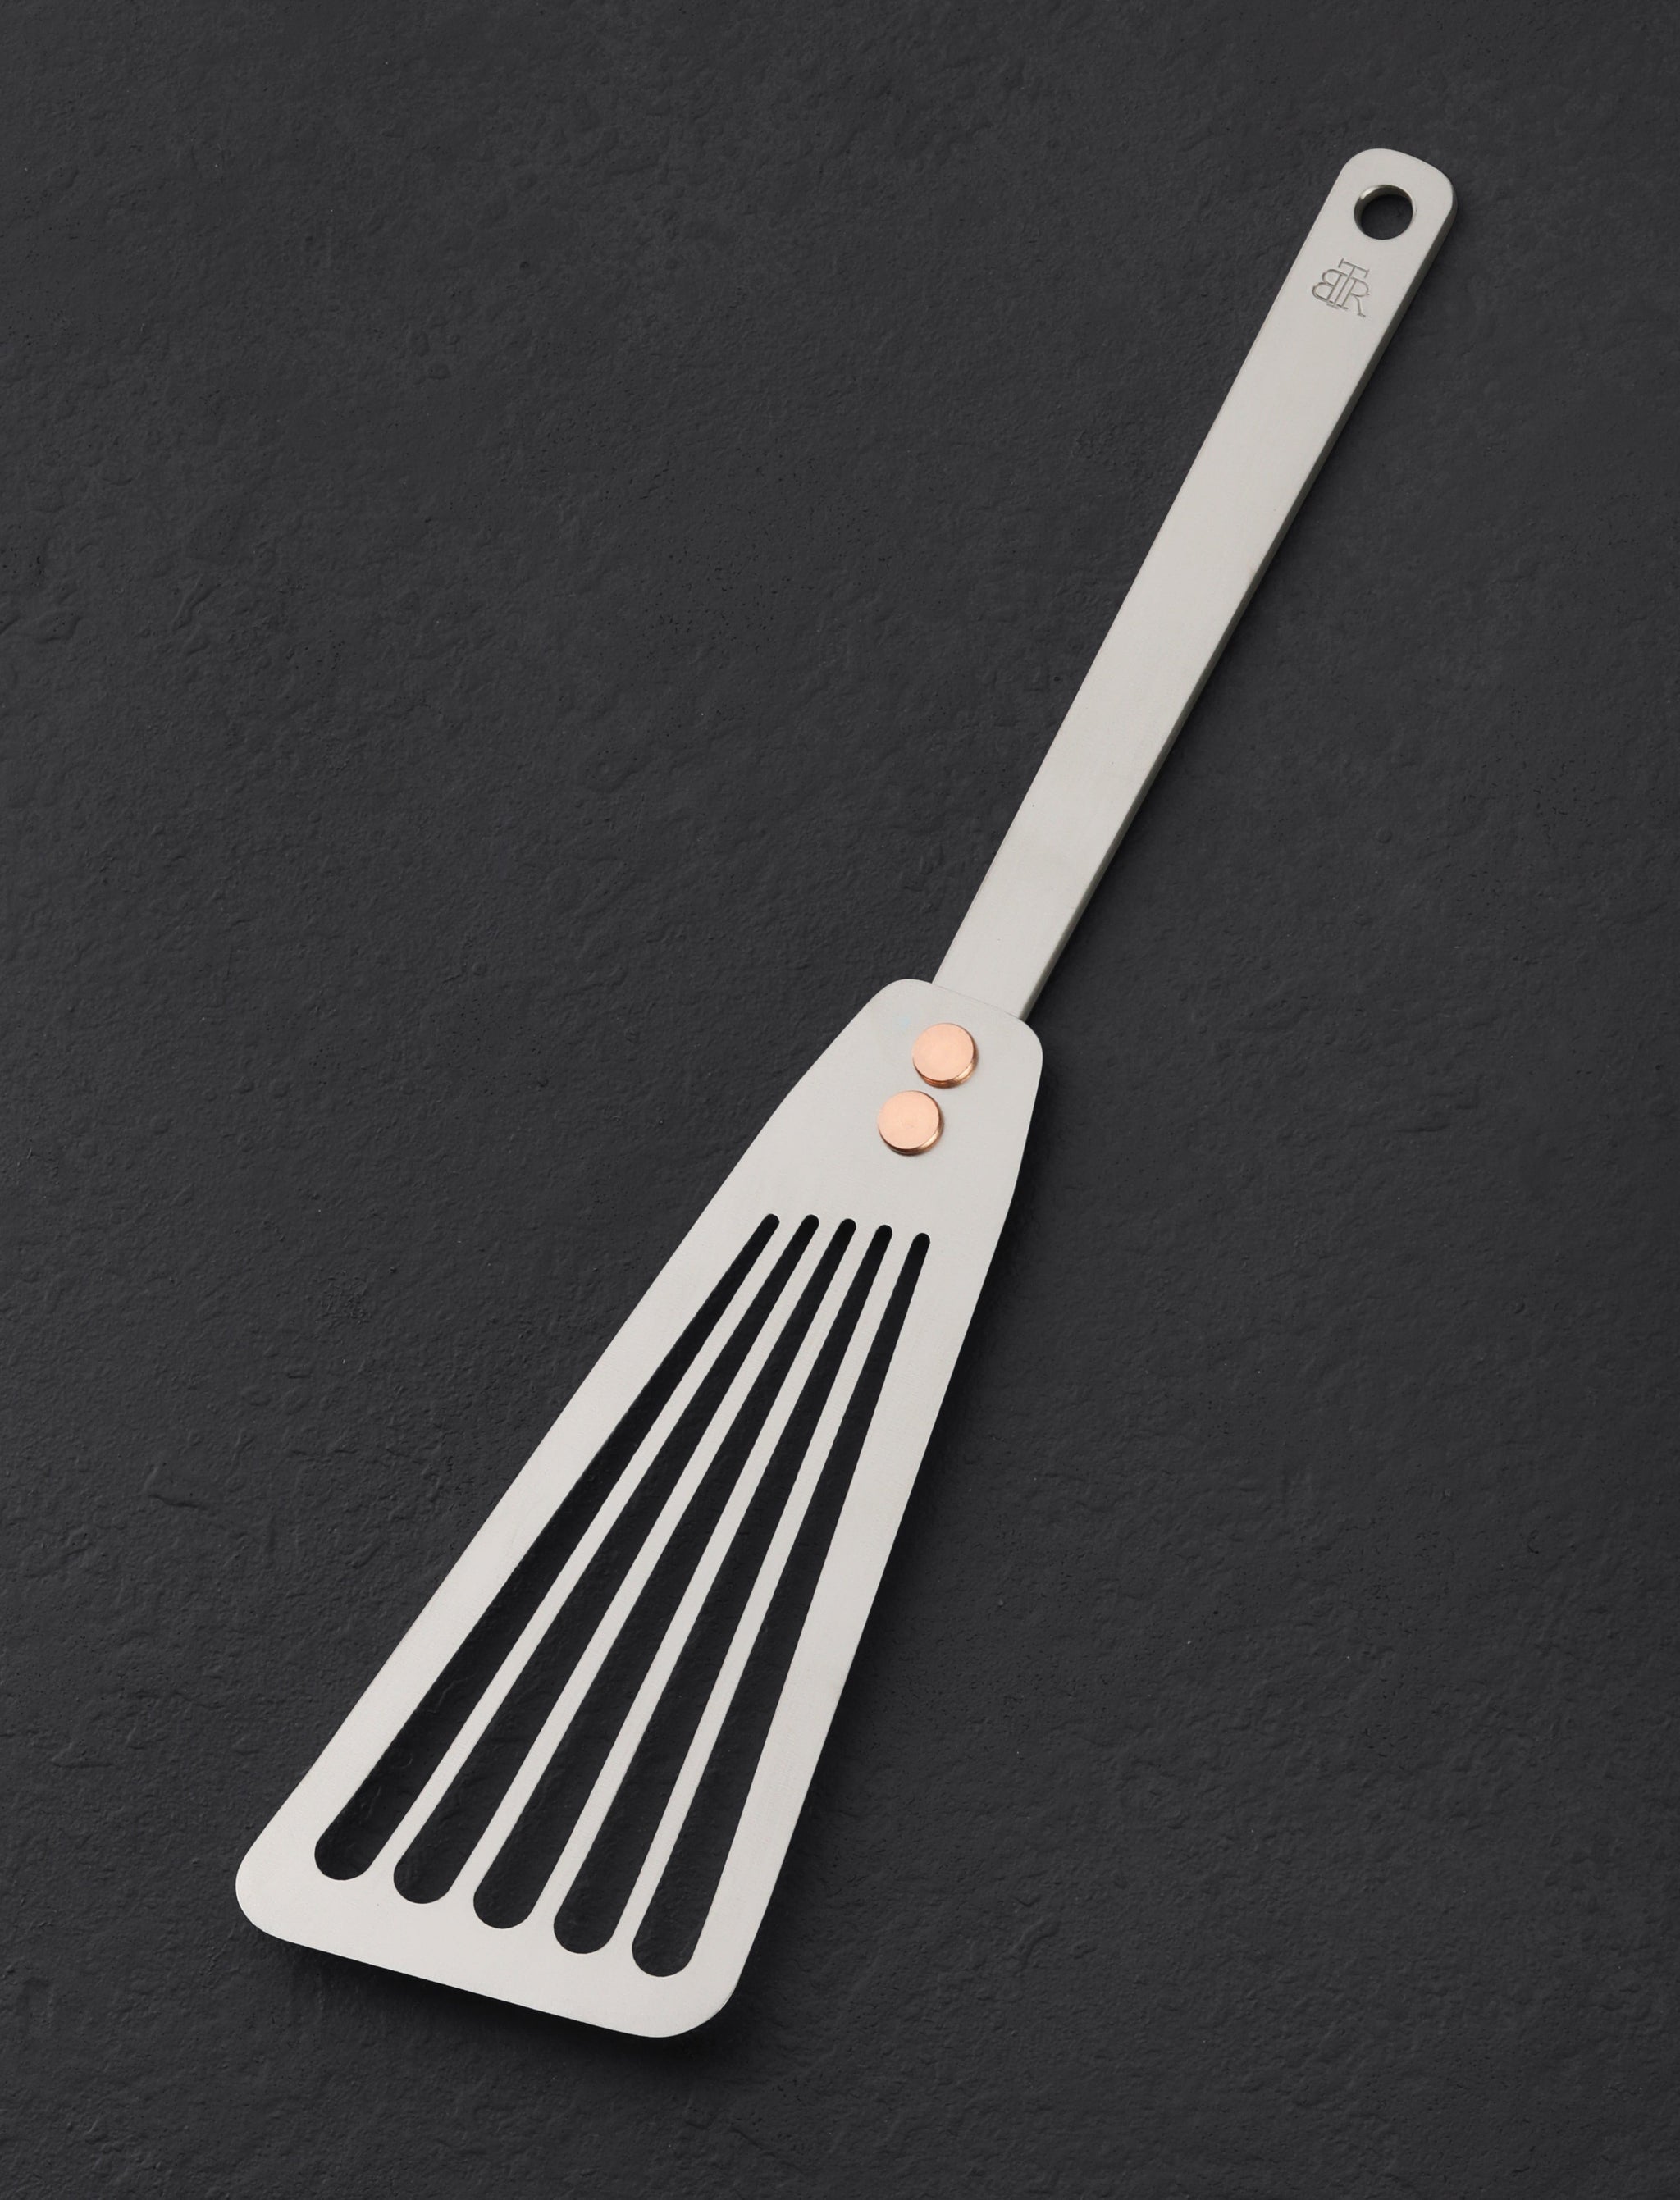 https://eatingtools.com/cdn/shop/files/spatulas-ben-tendick-oregon-tispats-titanium-fish-spatula-43020361007379.jpg?v=1693333809&width=2048